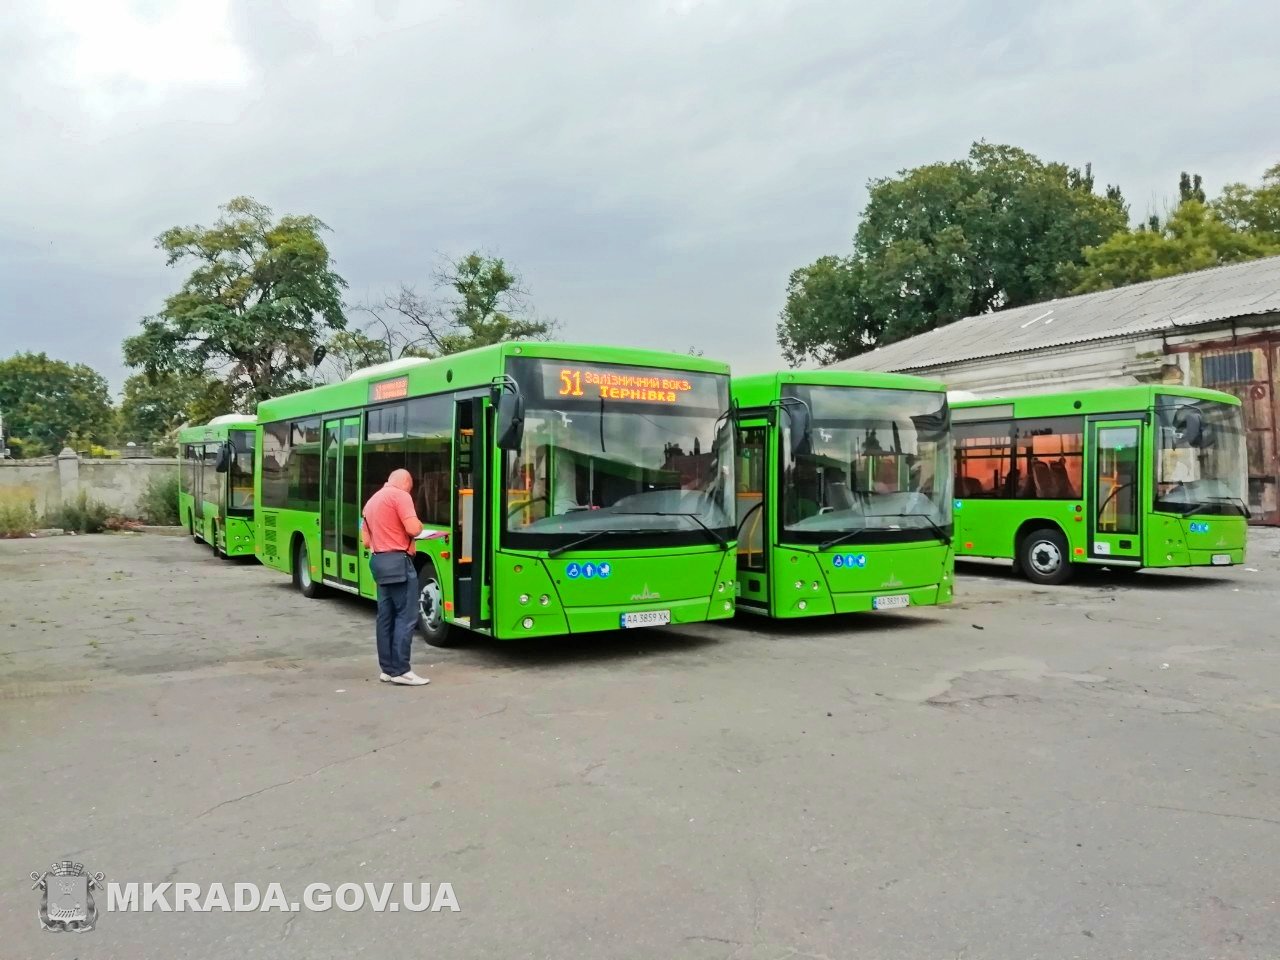 Николаевский автобус. Зеленый автобус. Автобусы Николаева. Николаев транспорт.